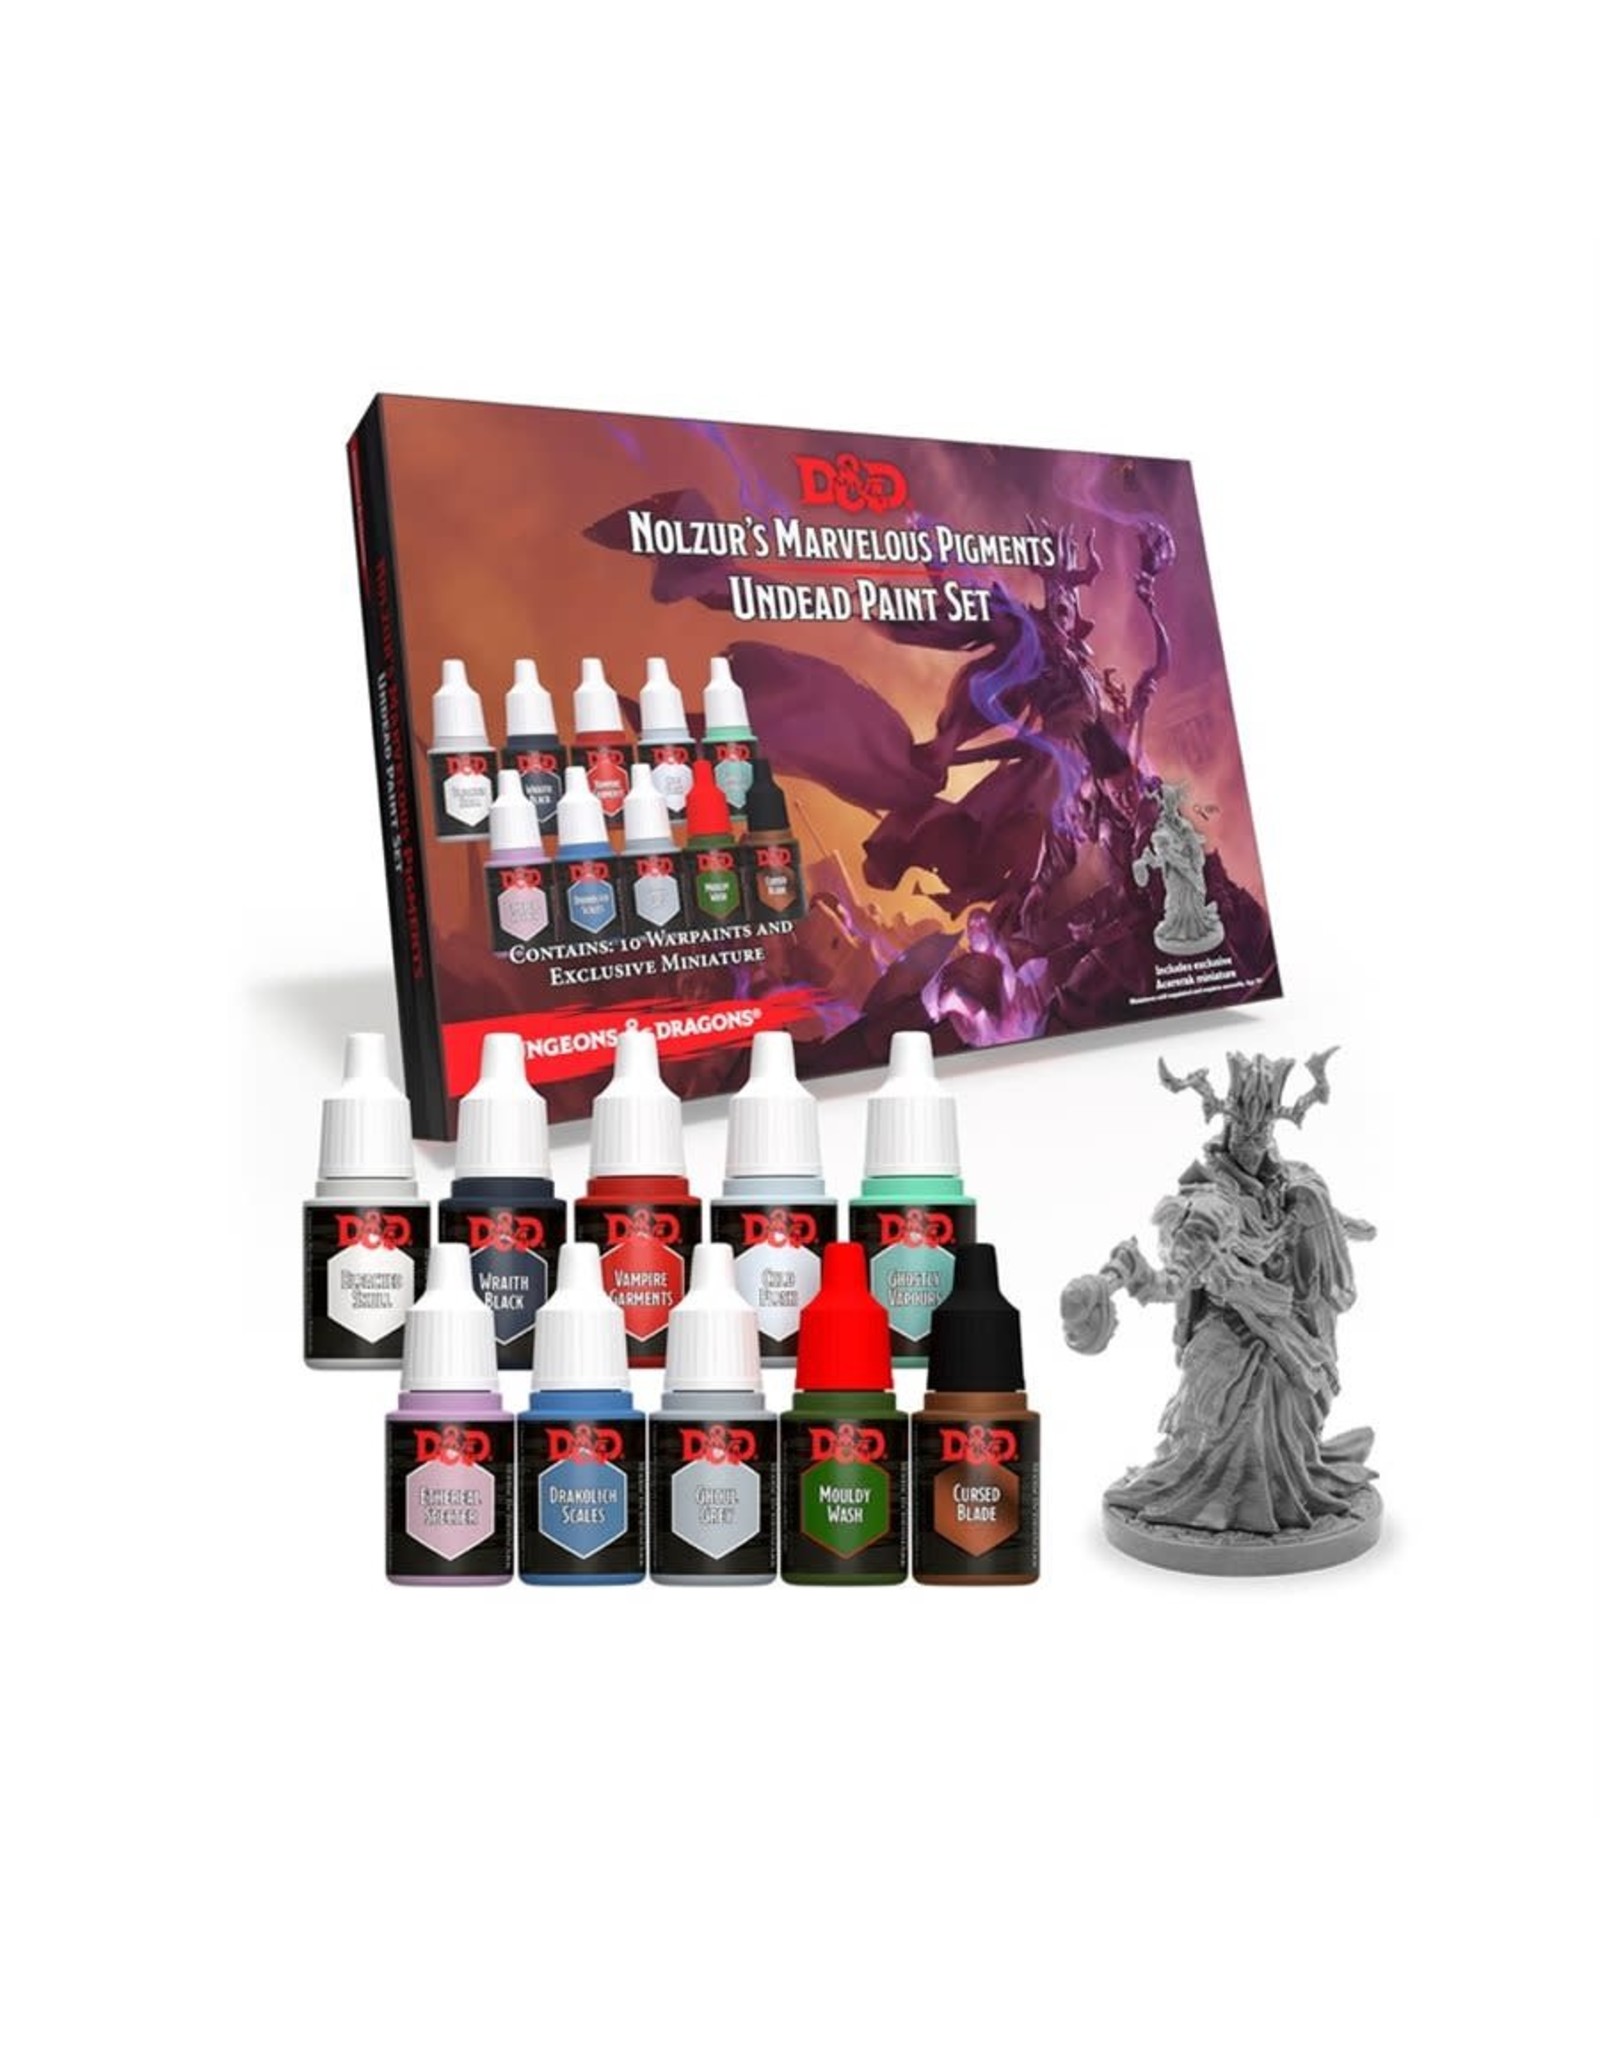 Wizards of the Coast Nolzur’s Marvelous Pigments: Undead Paint Set